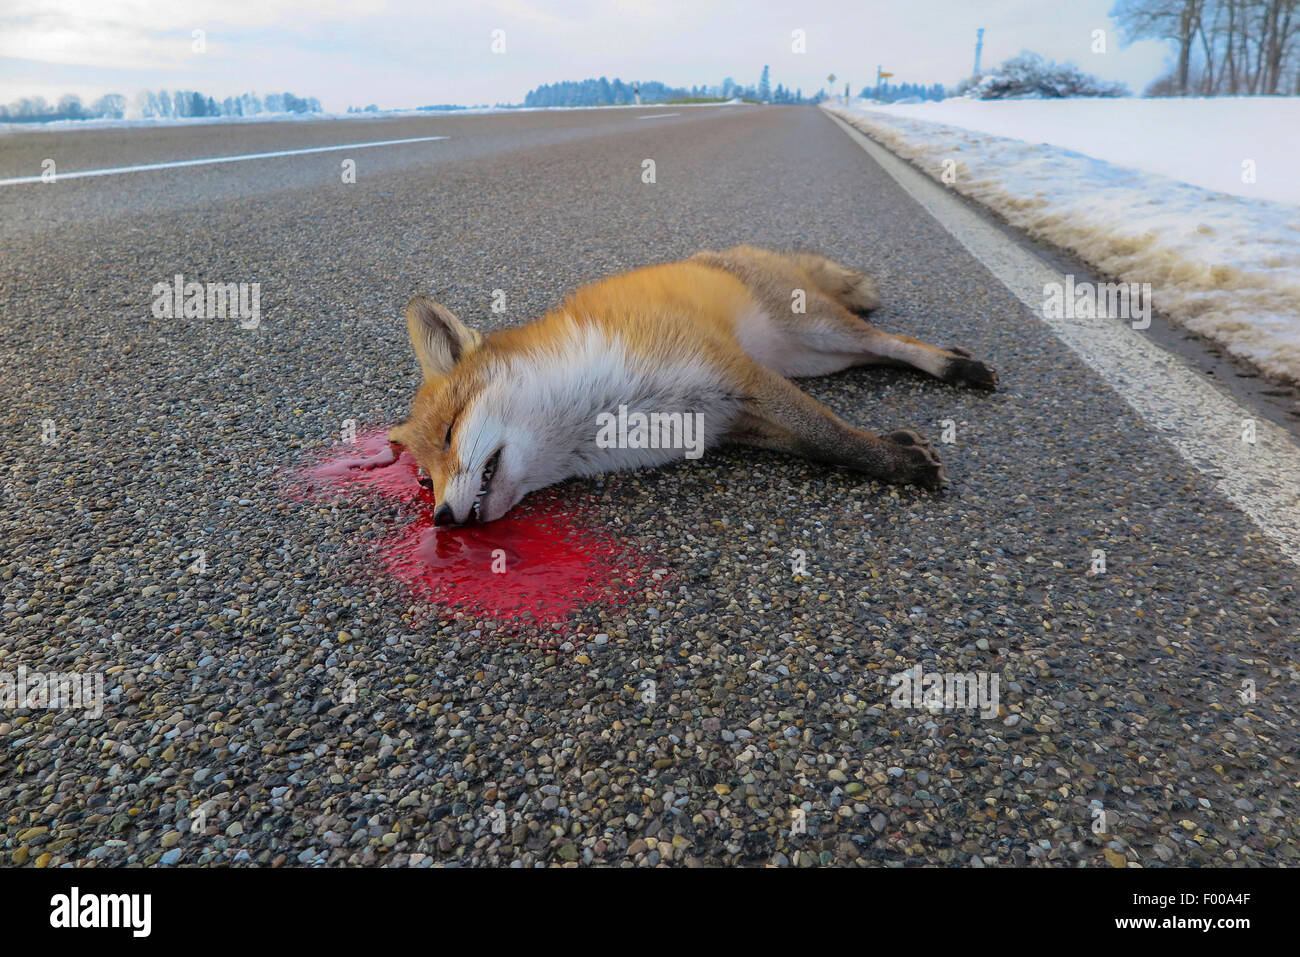 Le renard roux (Vulpes vulpes), mort dans la rue, roadkill, Germany Banque D'Images